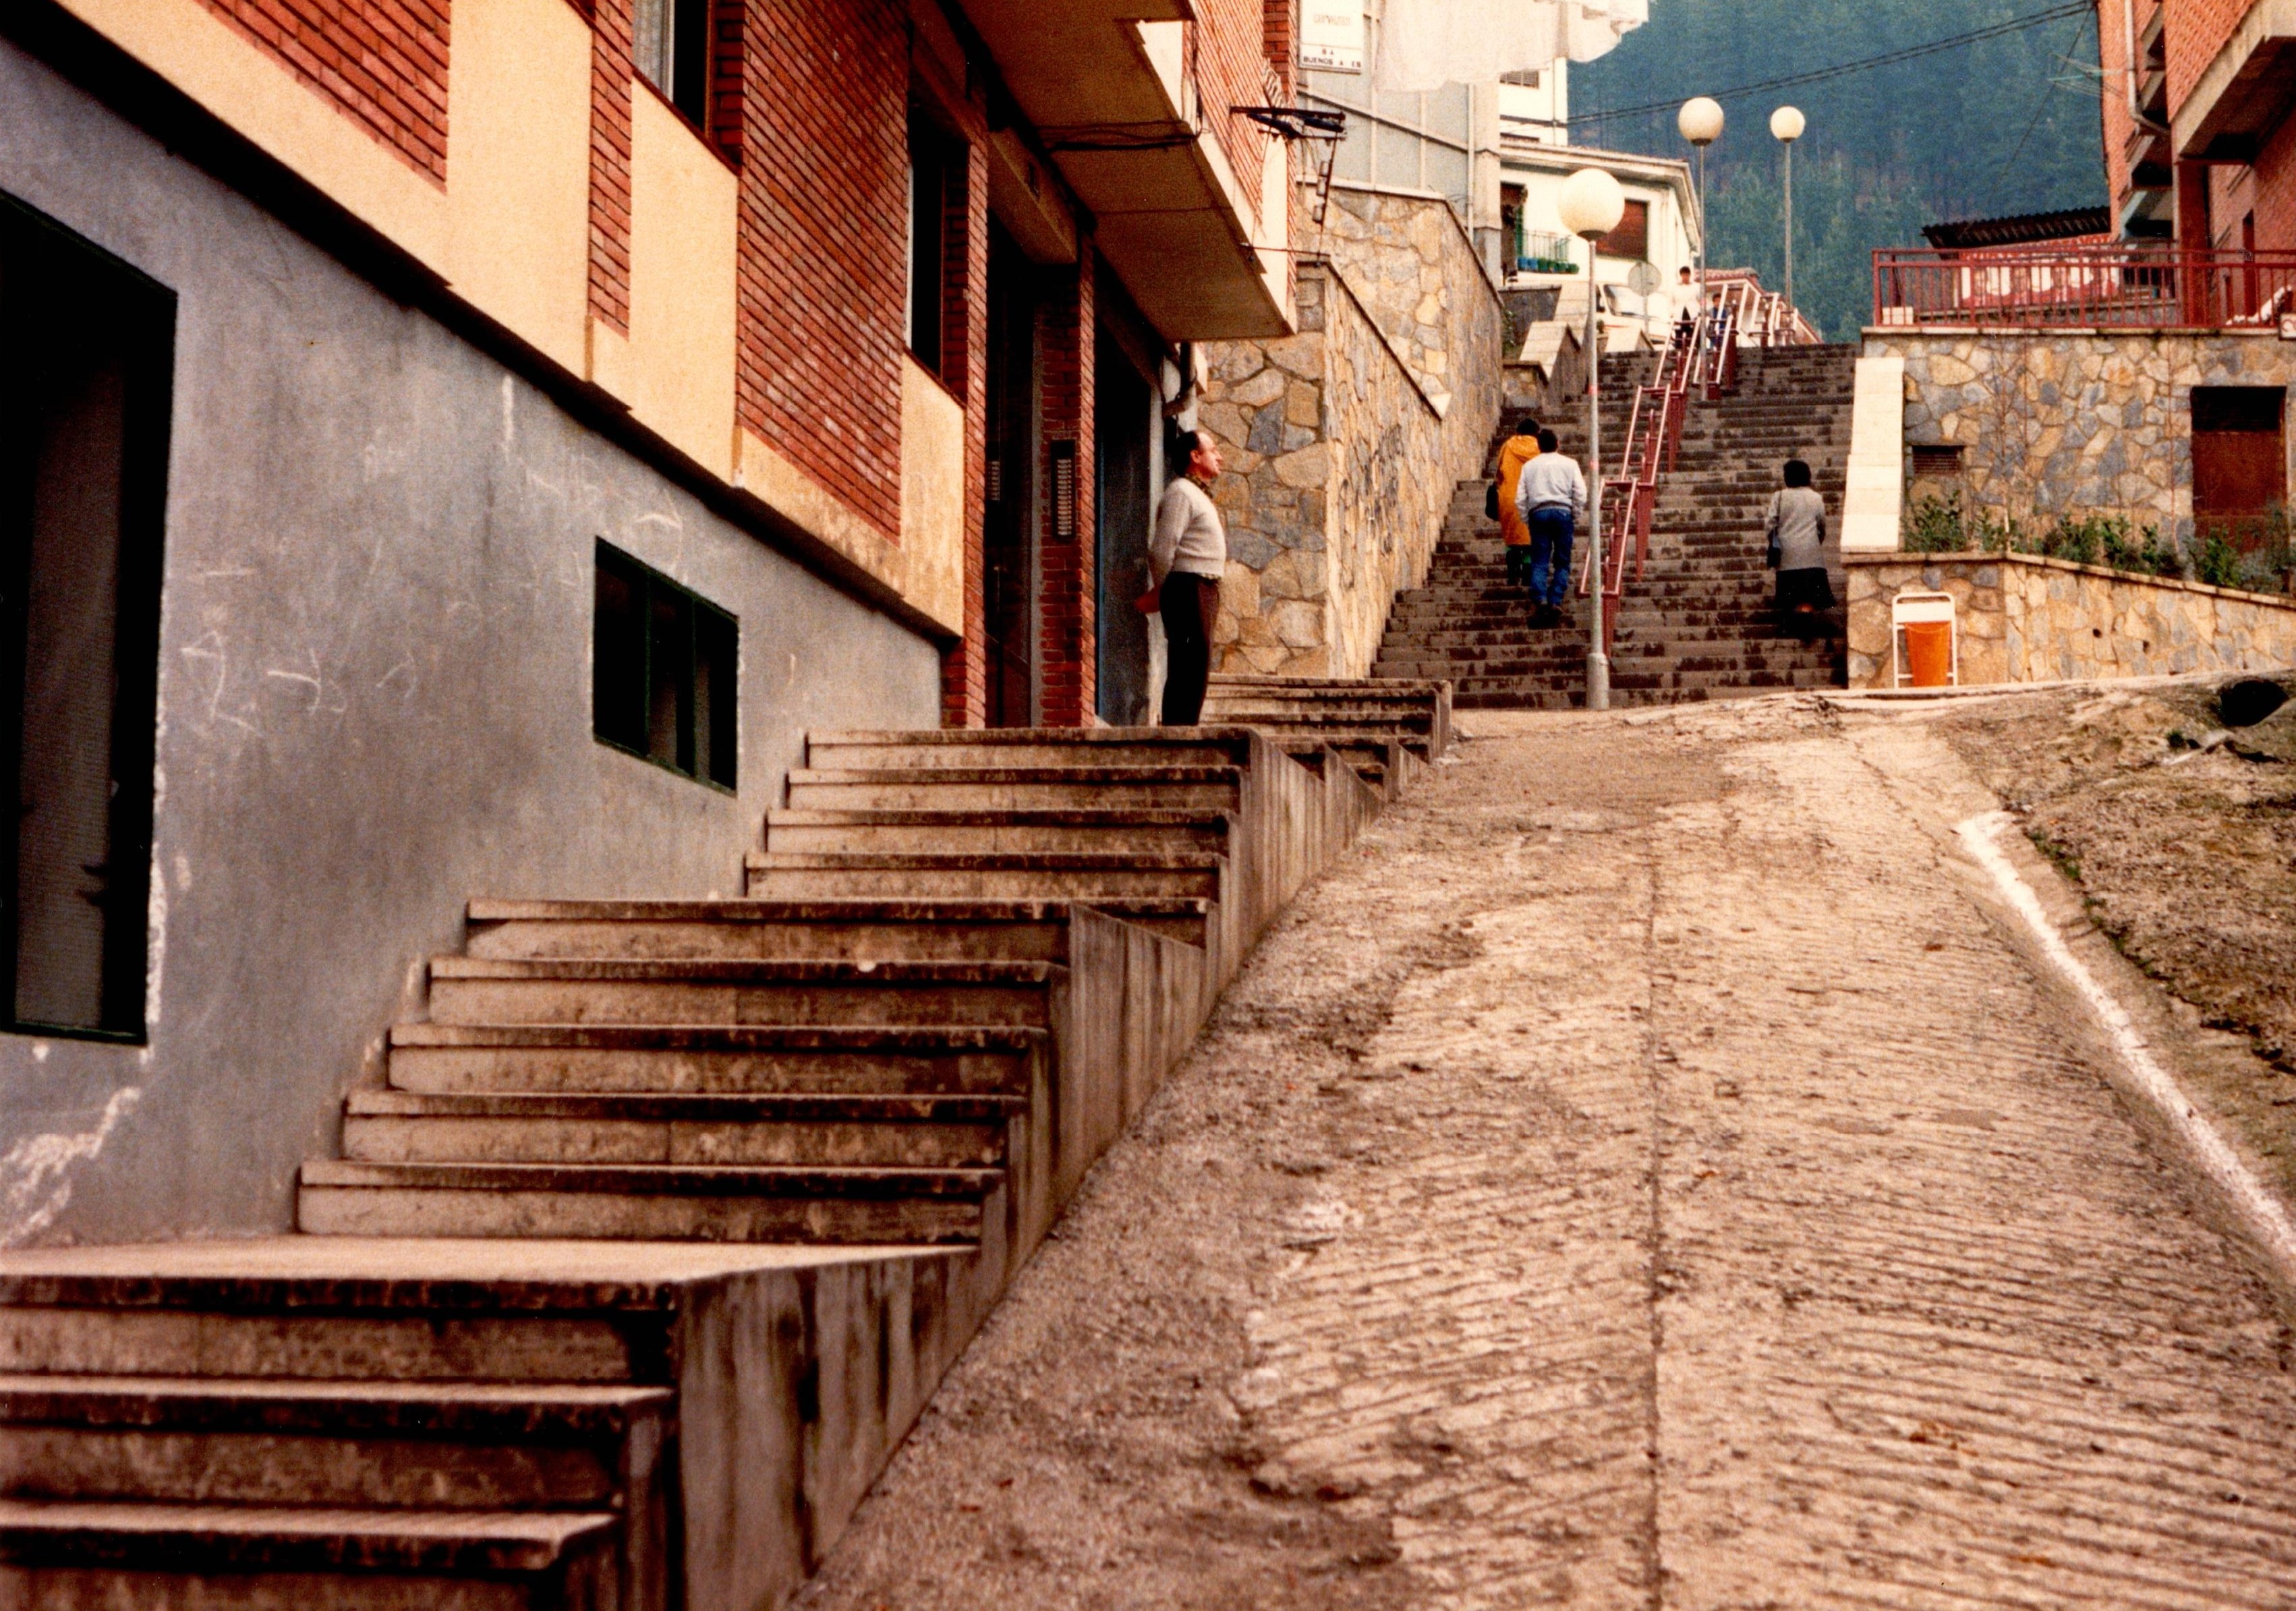 Se muestra la subida de una cuesta y unas escaleras. A la izquierda, a pie de calle hay viviendas pegadas a las escaleras. El asfalto está en malas condiciones, sobre todo la cuesta. Hay un señor en uno de los tramos de las escaleras de pie, quieto y otras tres personas subiendo por otro tamo de escaleras. 